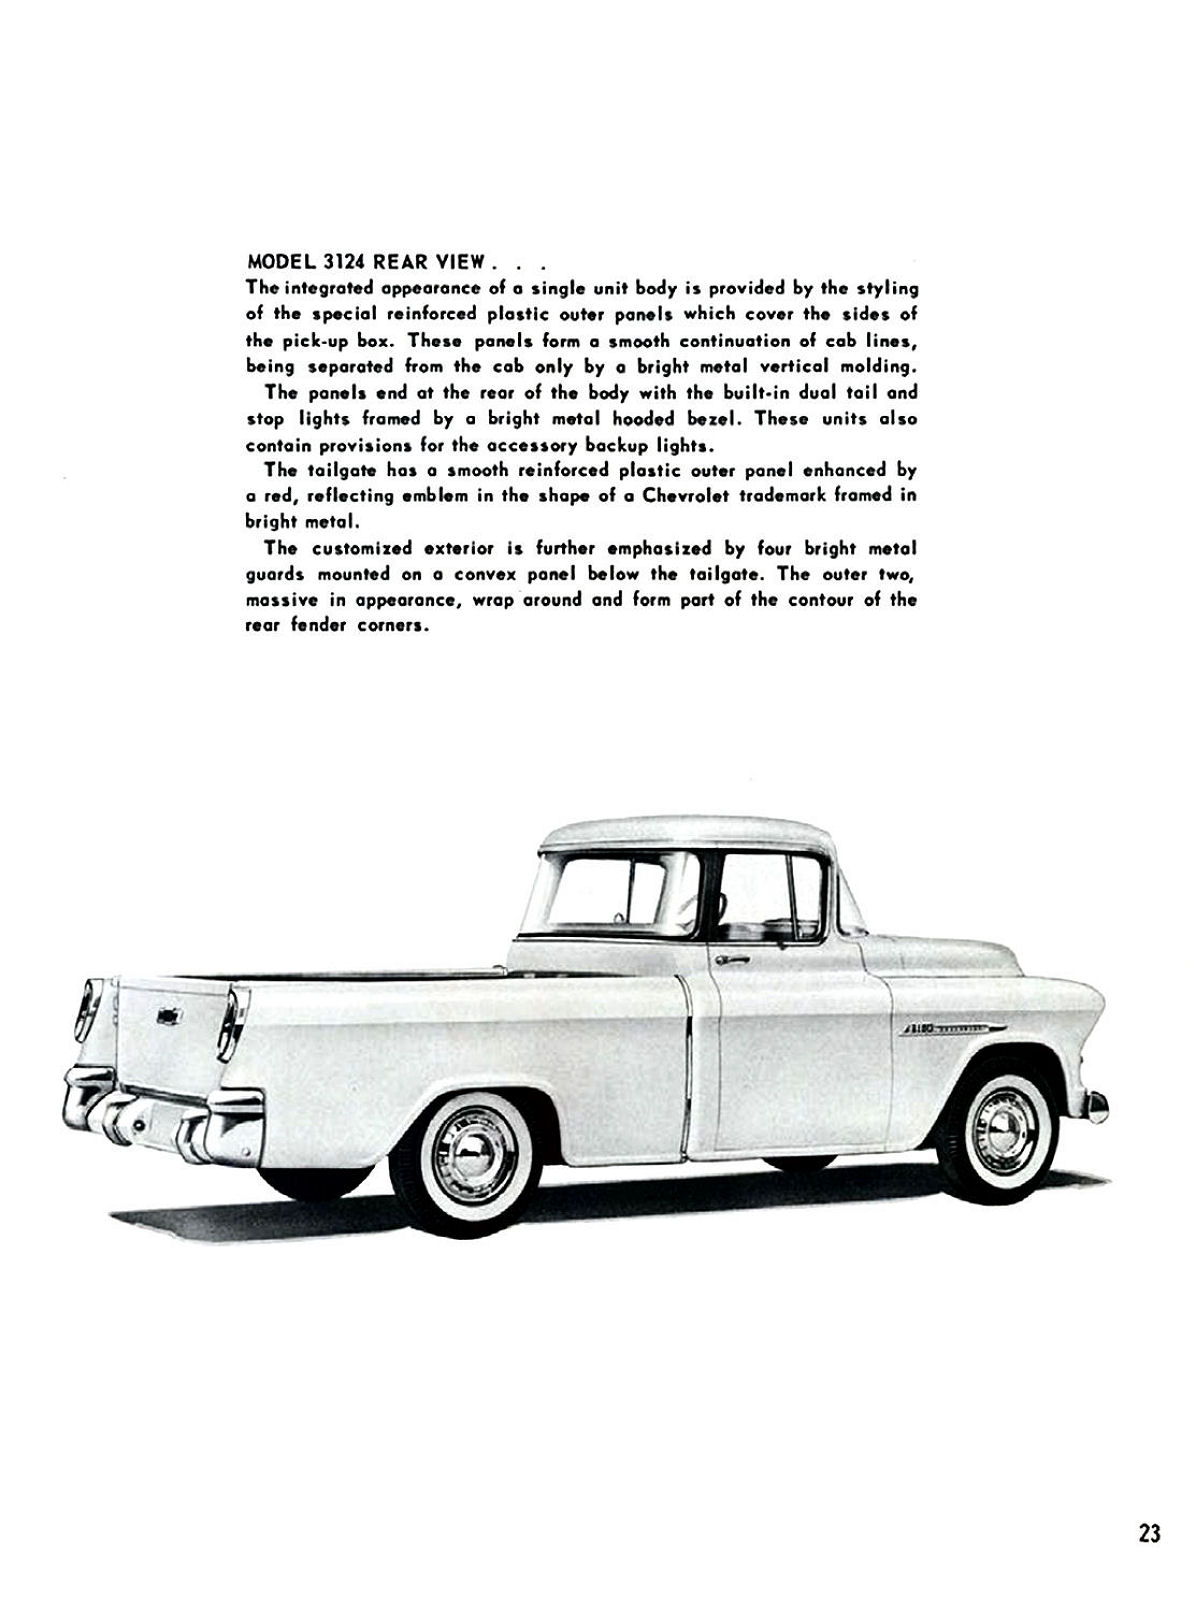 1955_Chevrolet_Truck_Engineering_Features-023